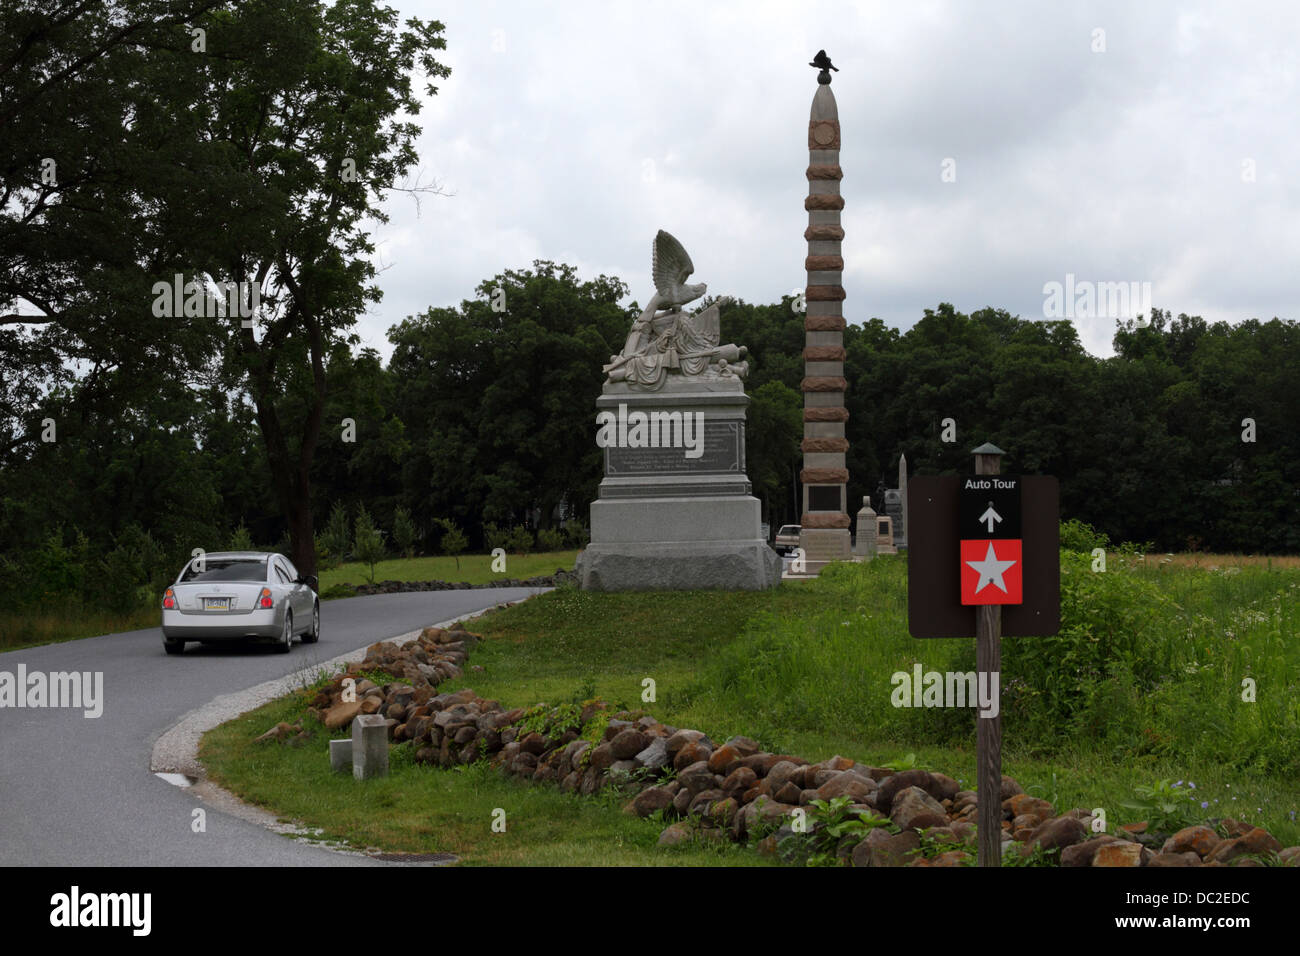 Panneau sur Doubleday Avenue indiquant la route de la visite automatique à travers le champ de bataille de Gettysburg, parc militaire national de Gettysburg, Pennsylvanie, États-Unis Banque D'Images